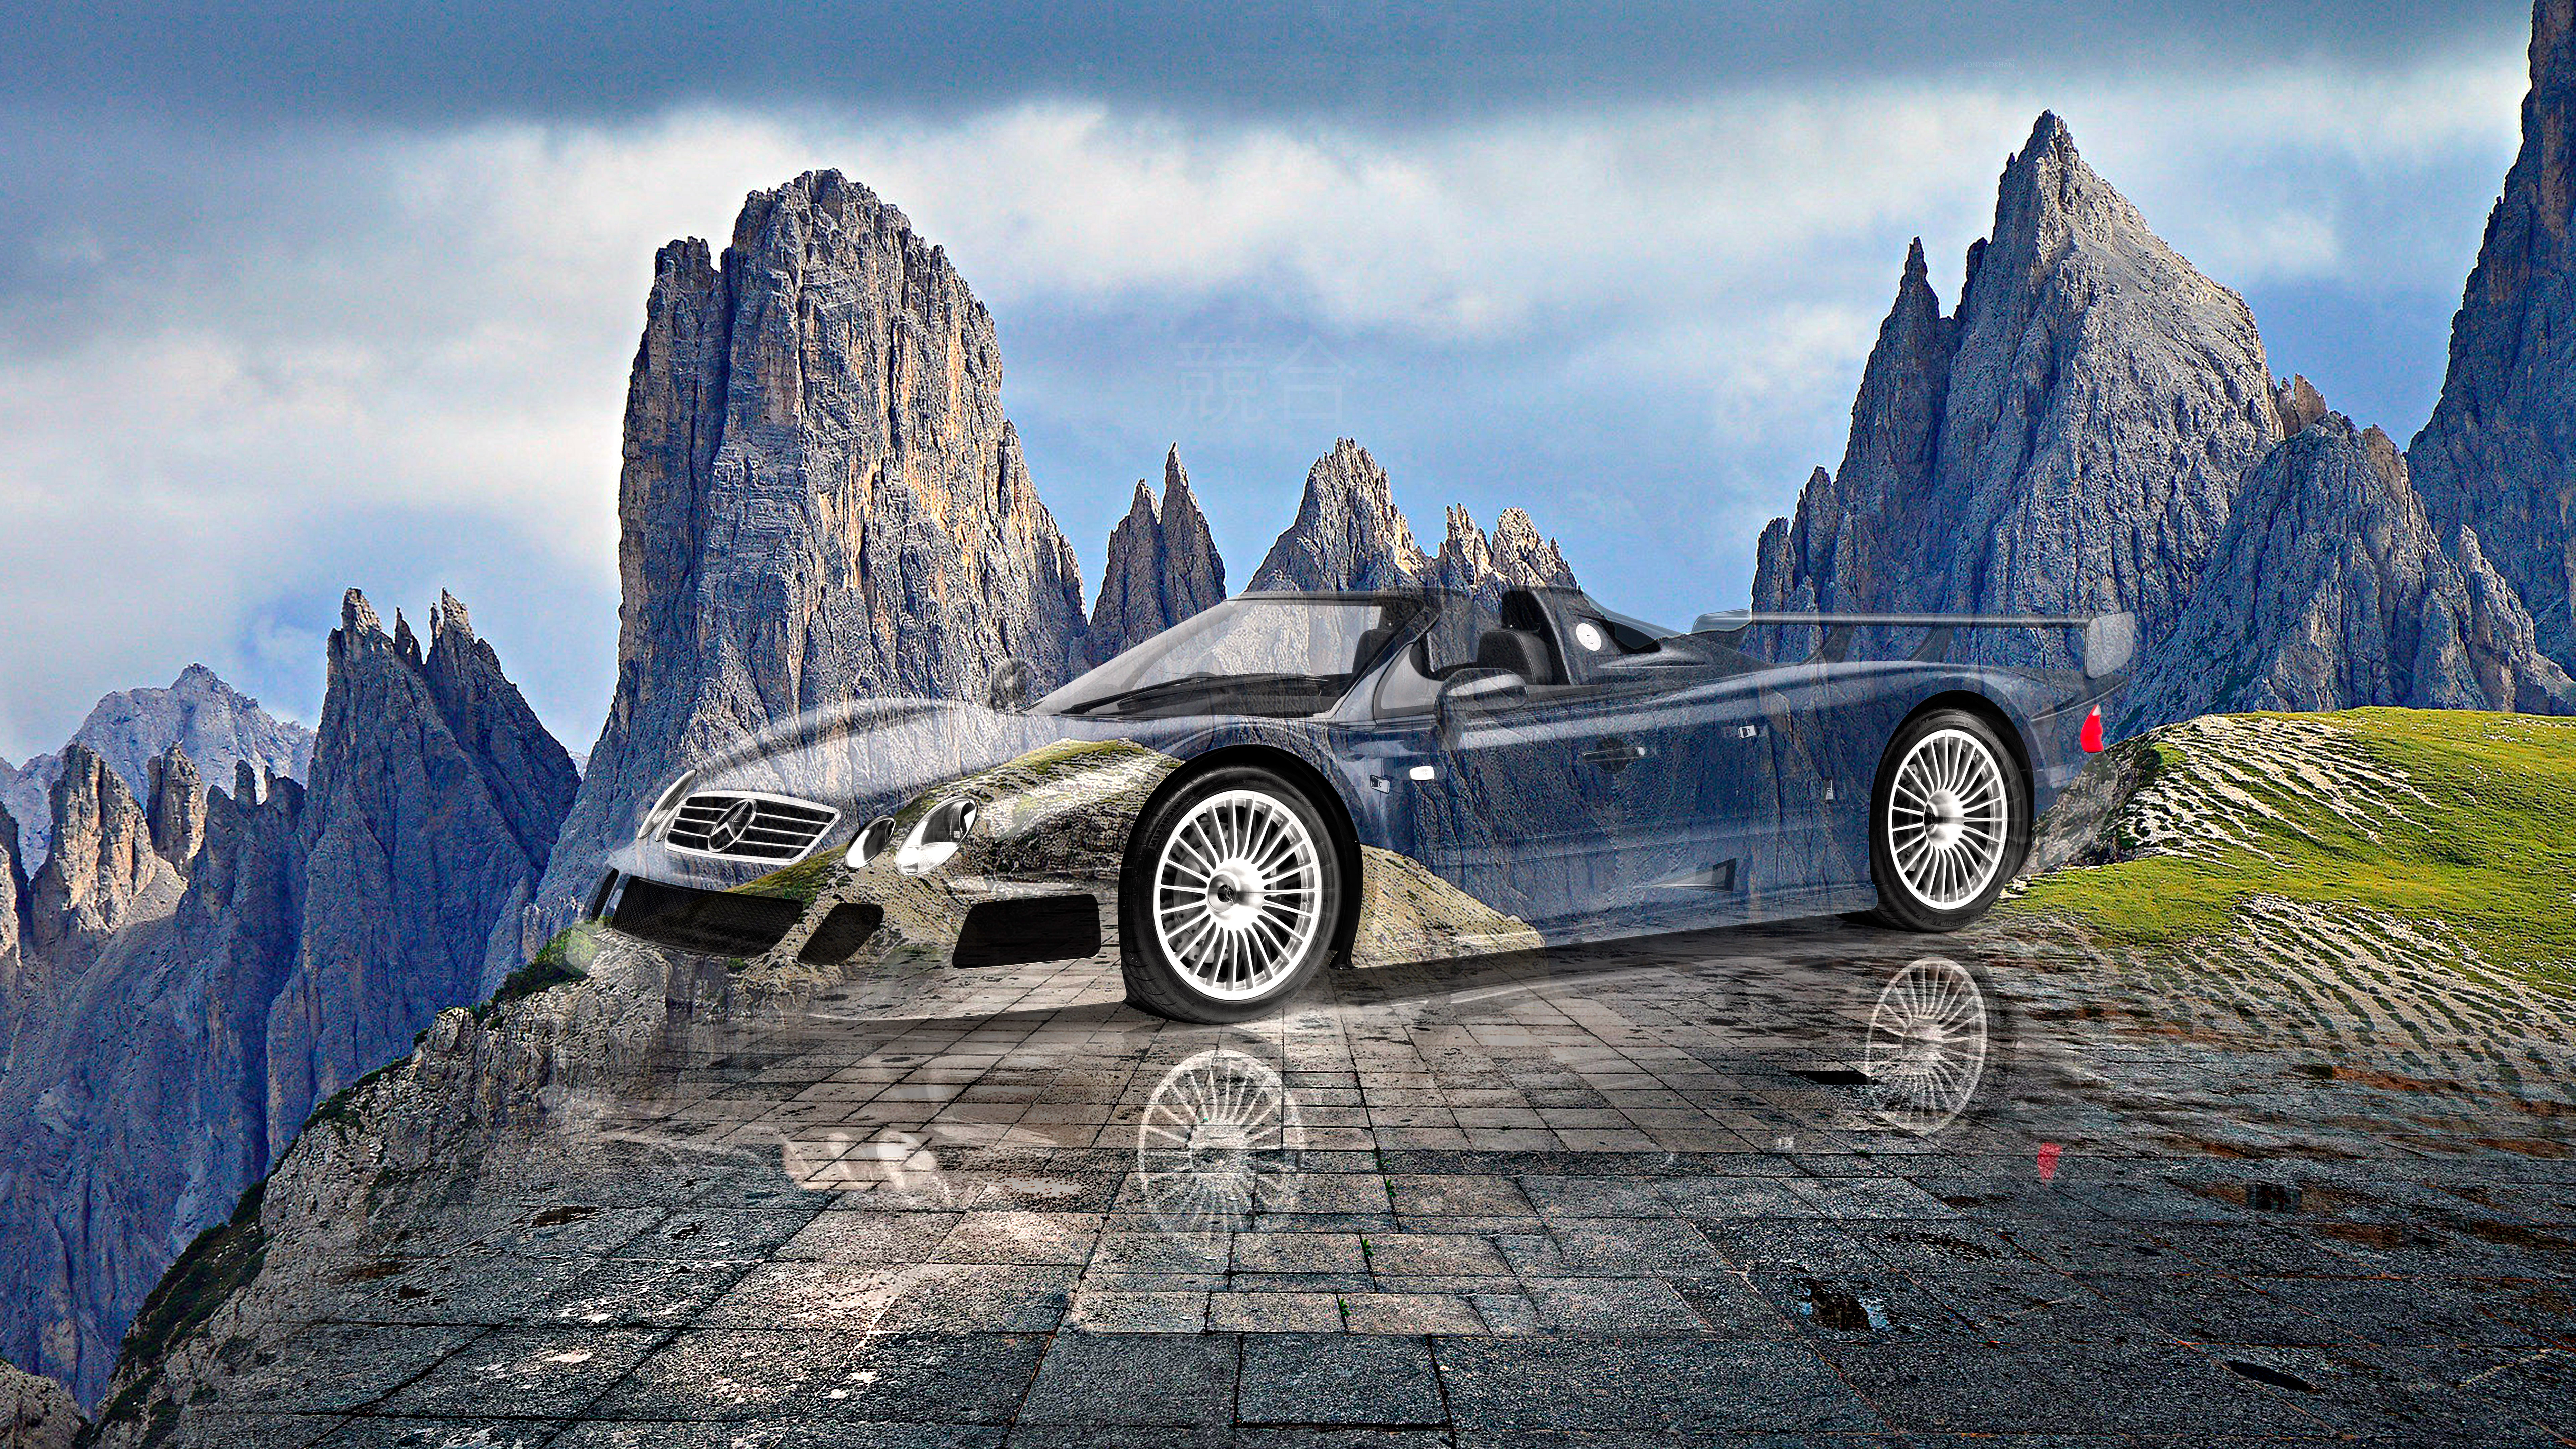 Mercedes-Benz-CLK-GTR-Roadster-Super-Crystal-Conflict-Soul-Cadini-Di-Misurina-Italy-Dolomites-Art-Car